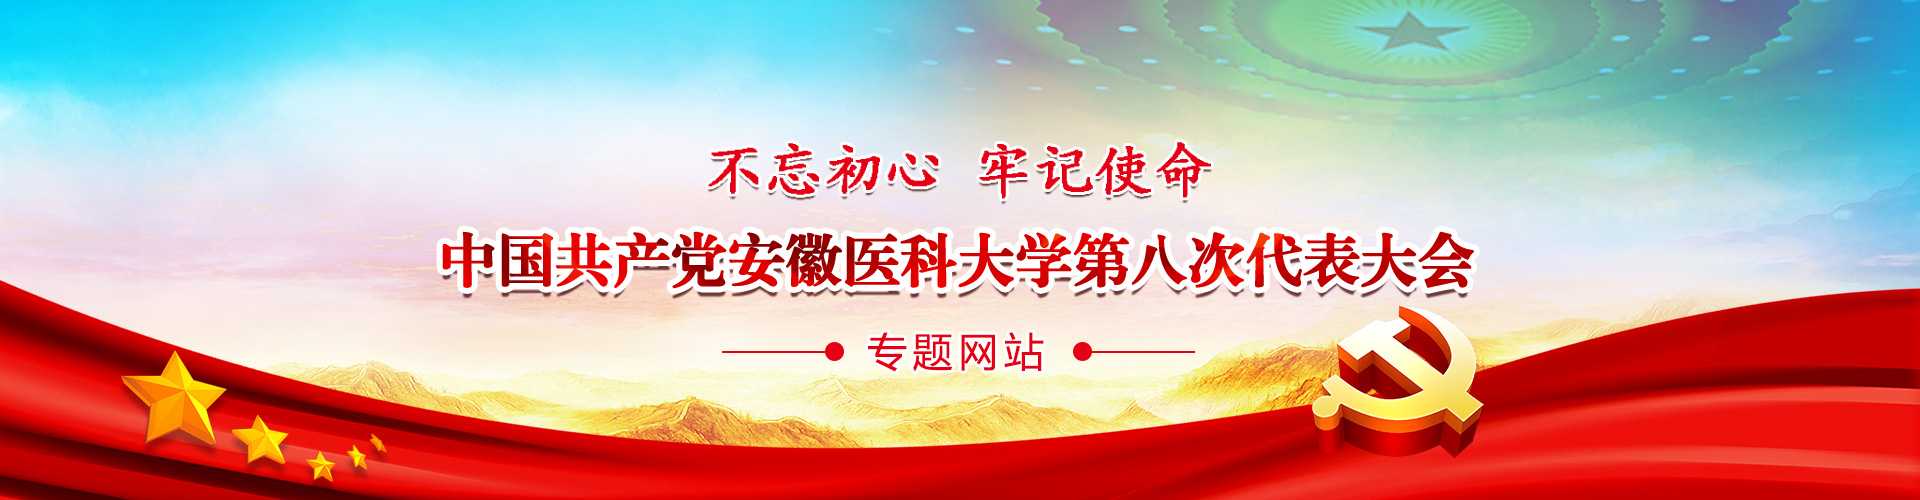 不忘初心 牢记使命,中国共产党bobapp安卓手机版
第八次代表大会